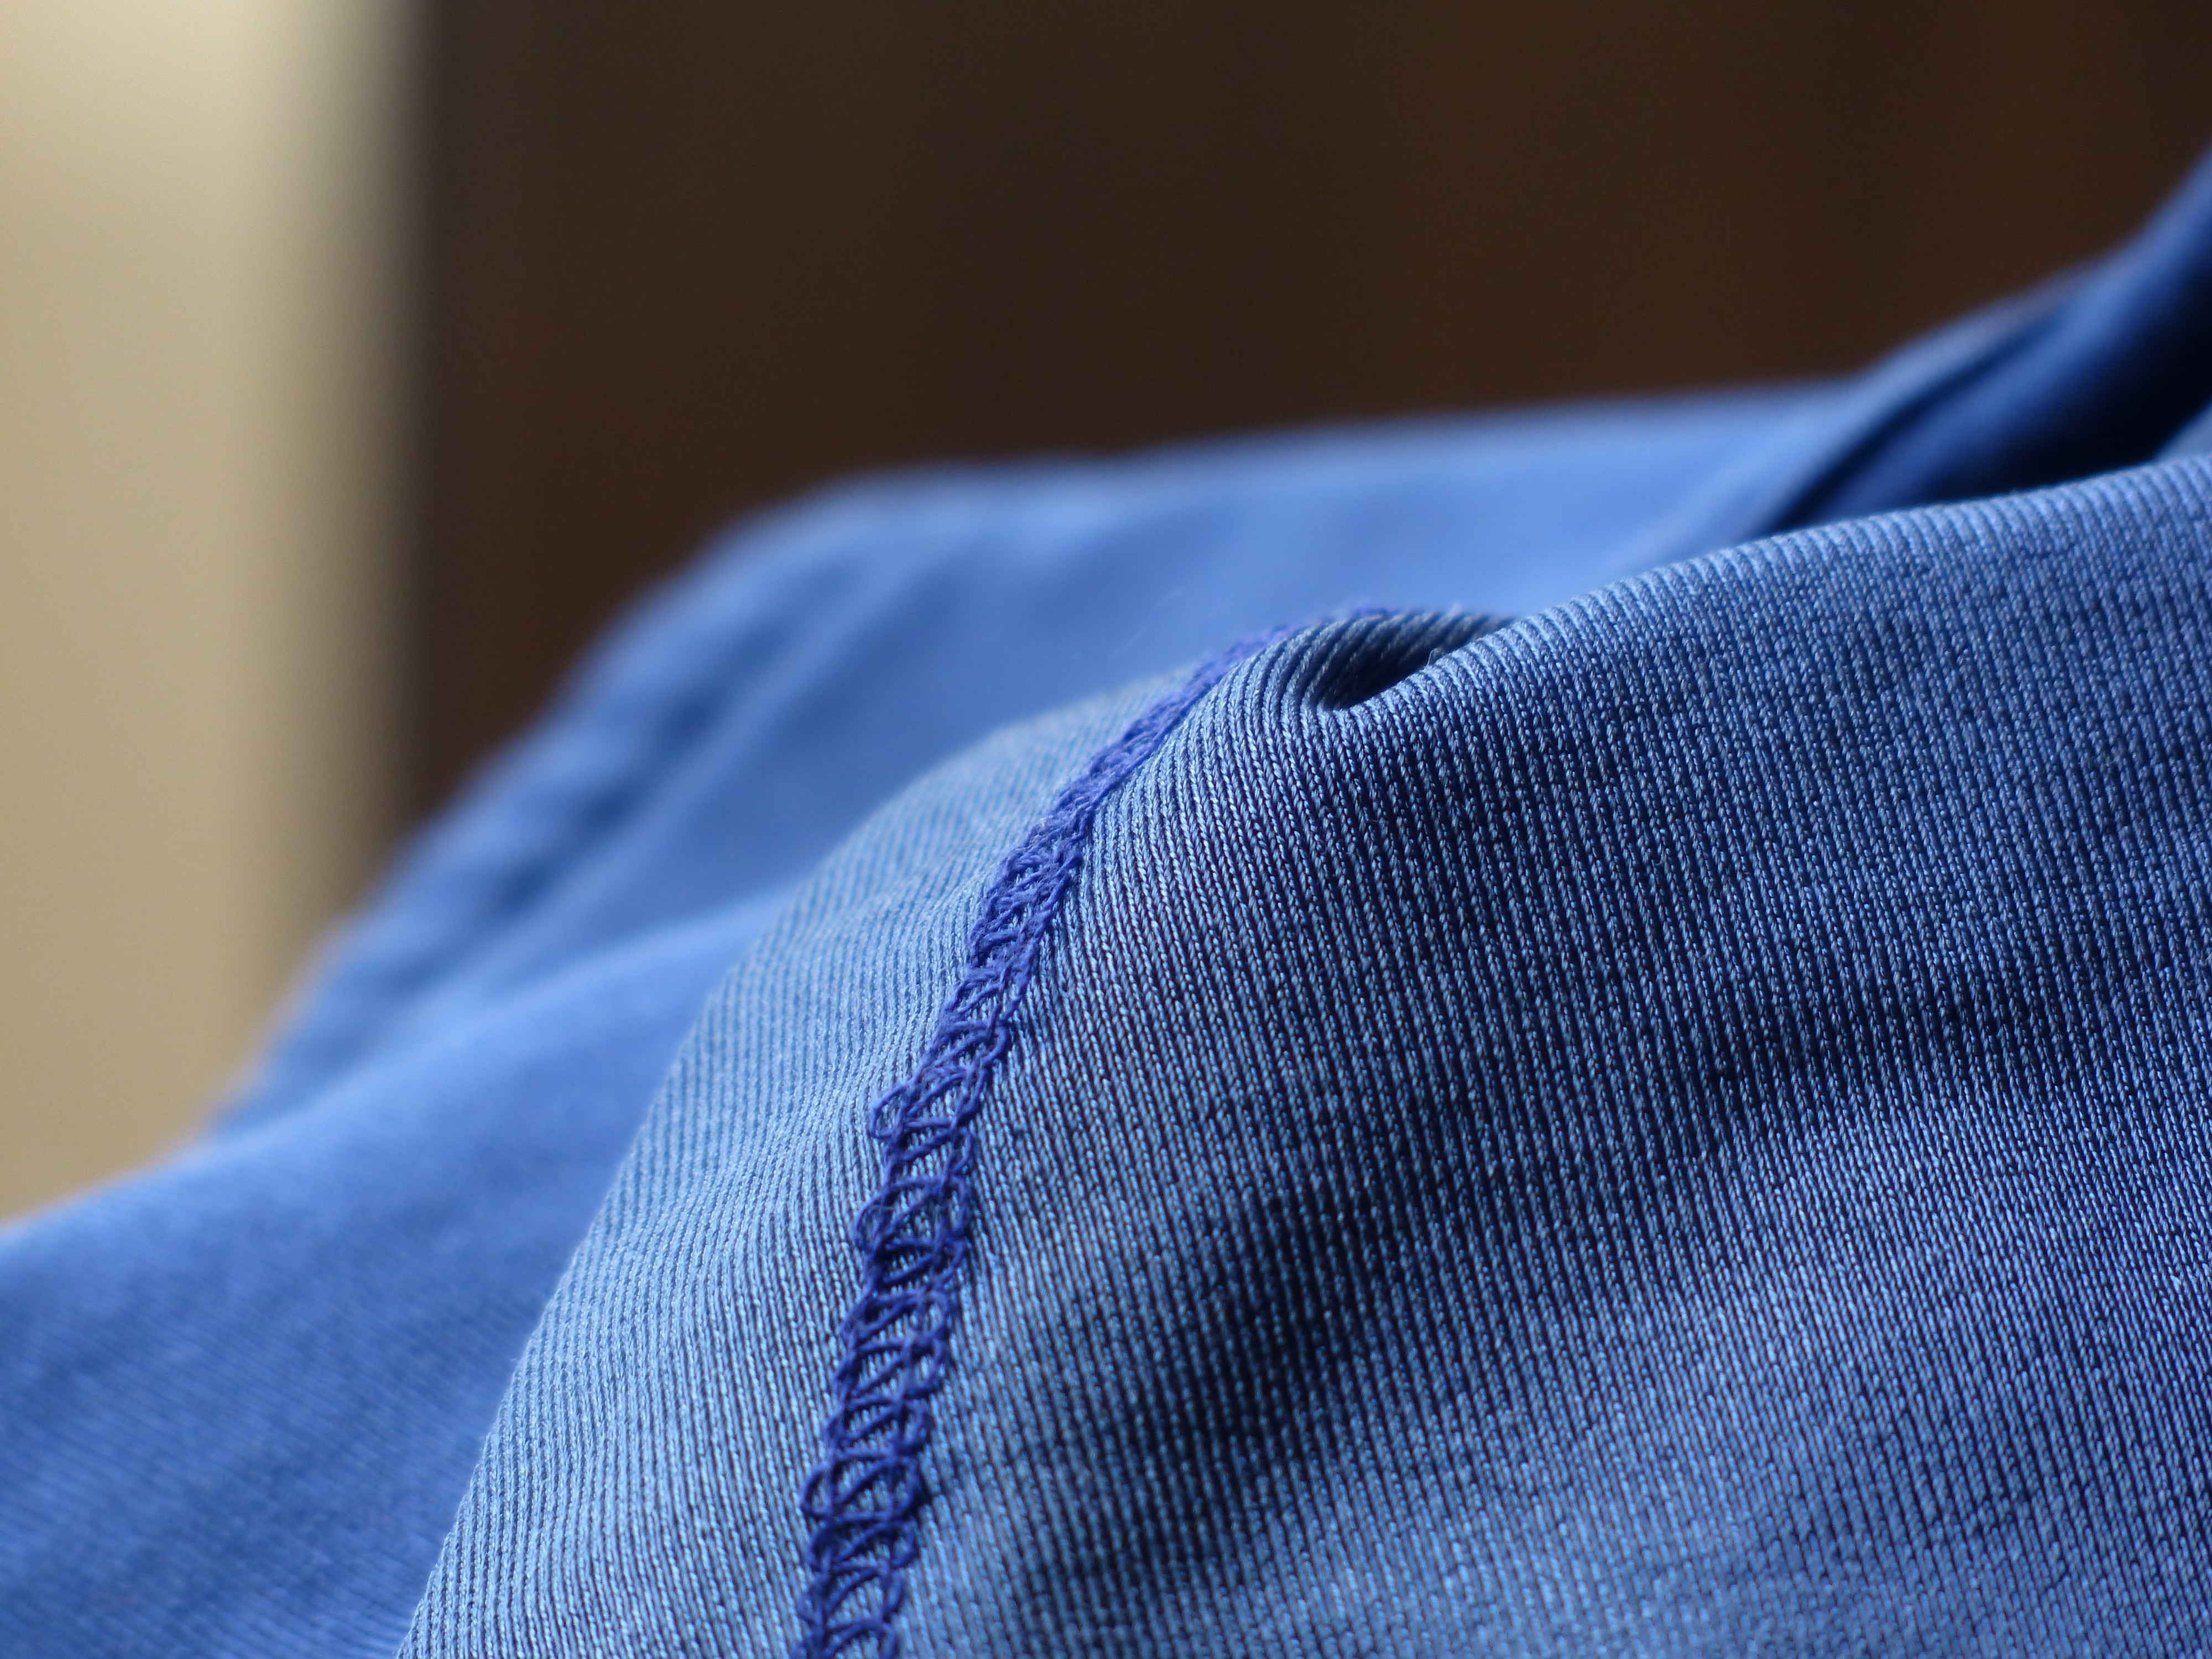 blue textile